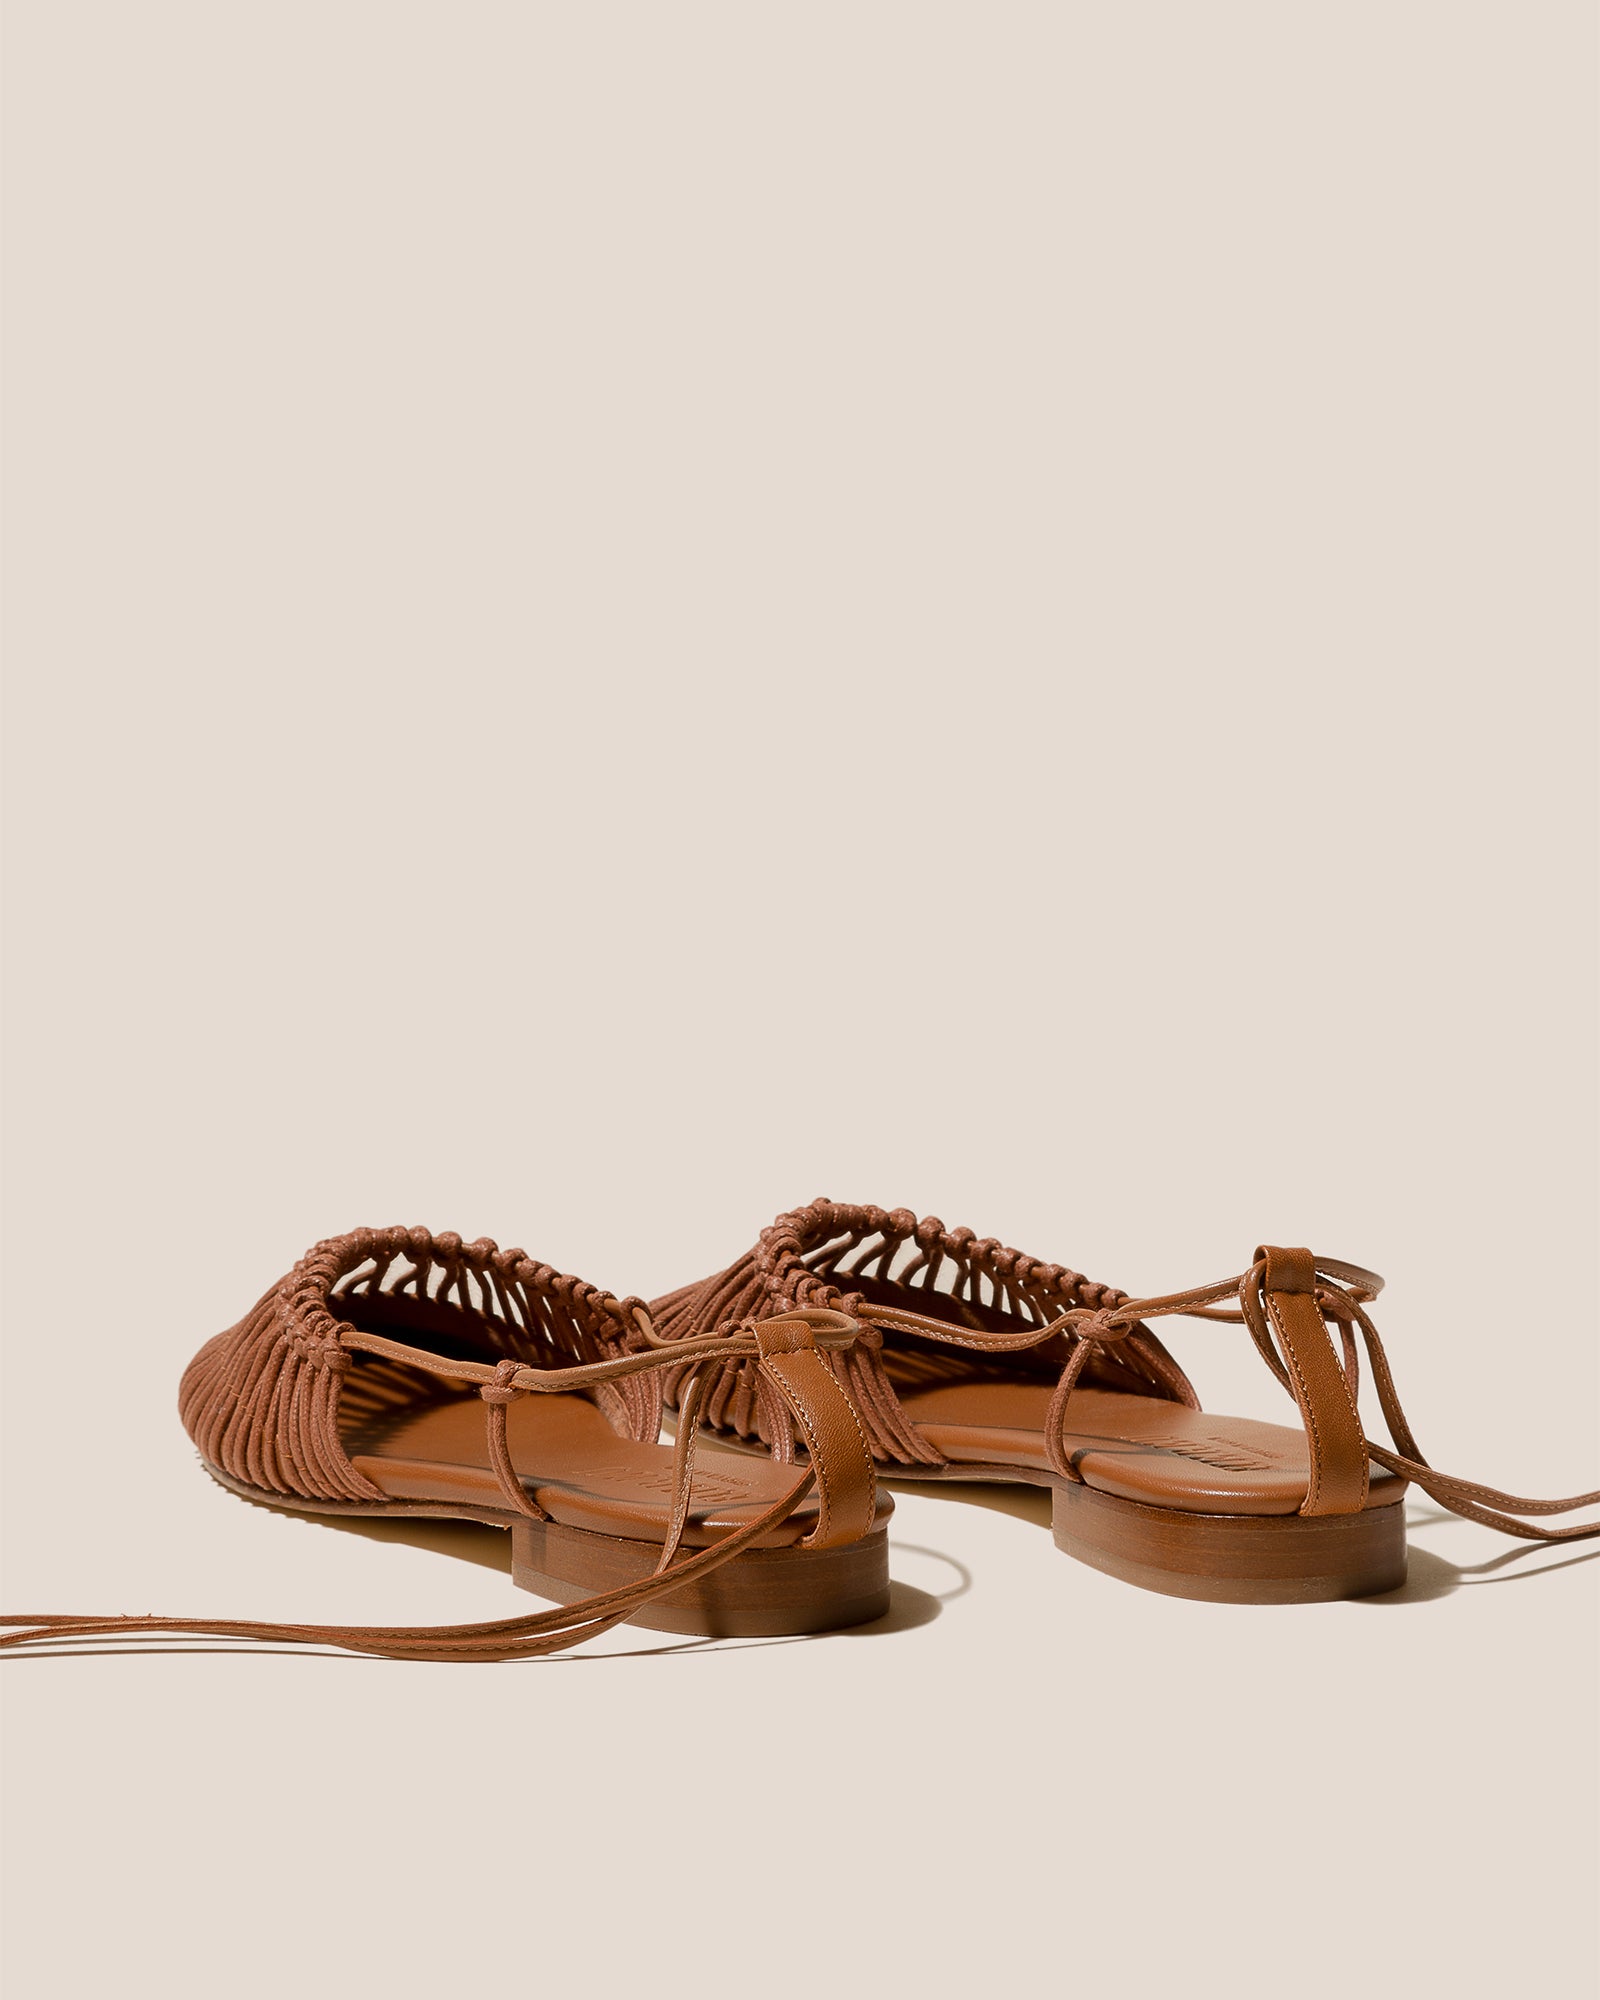 All Shoes – Hereu Studio